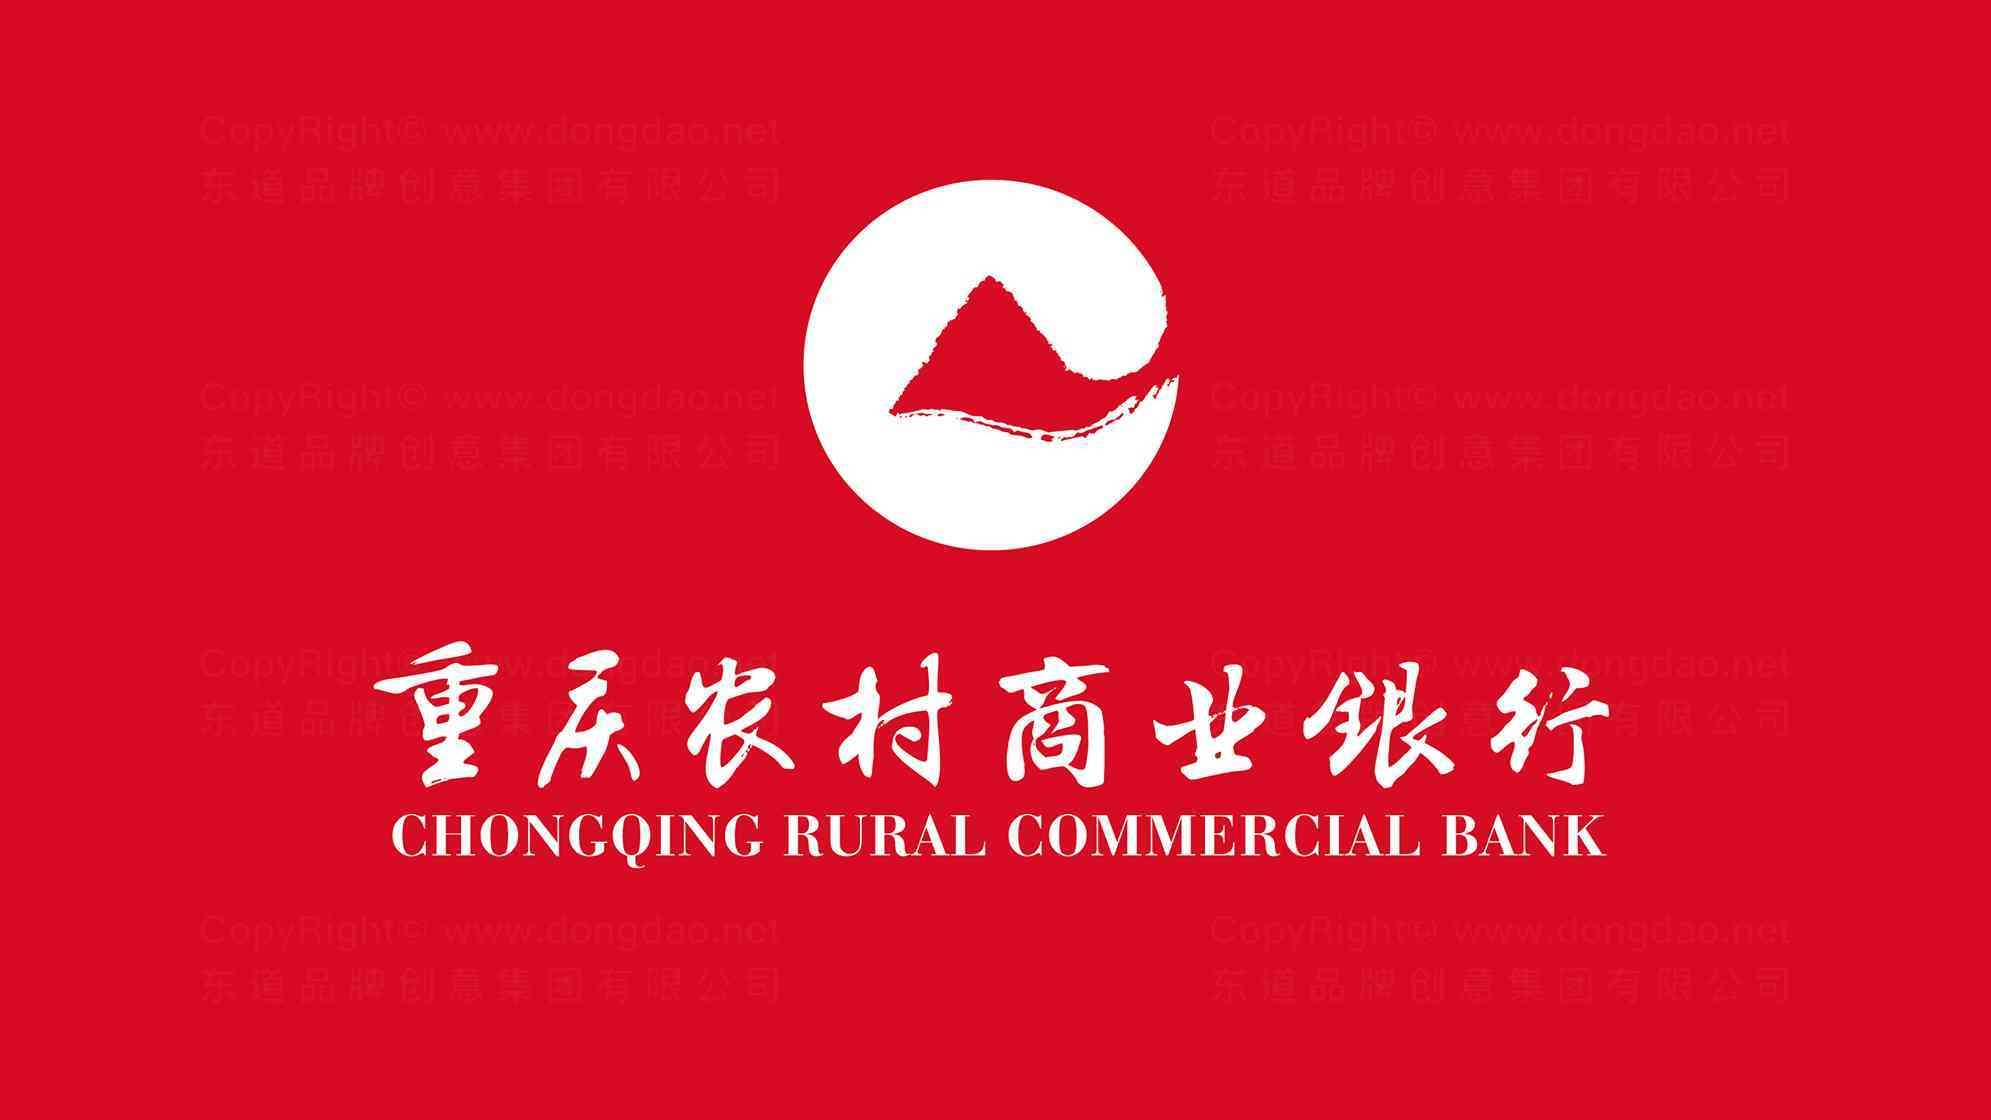 重庆农村商业银行品牌logo设计图片素材